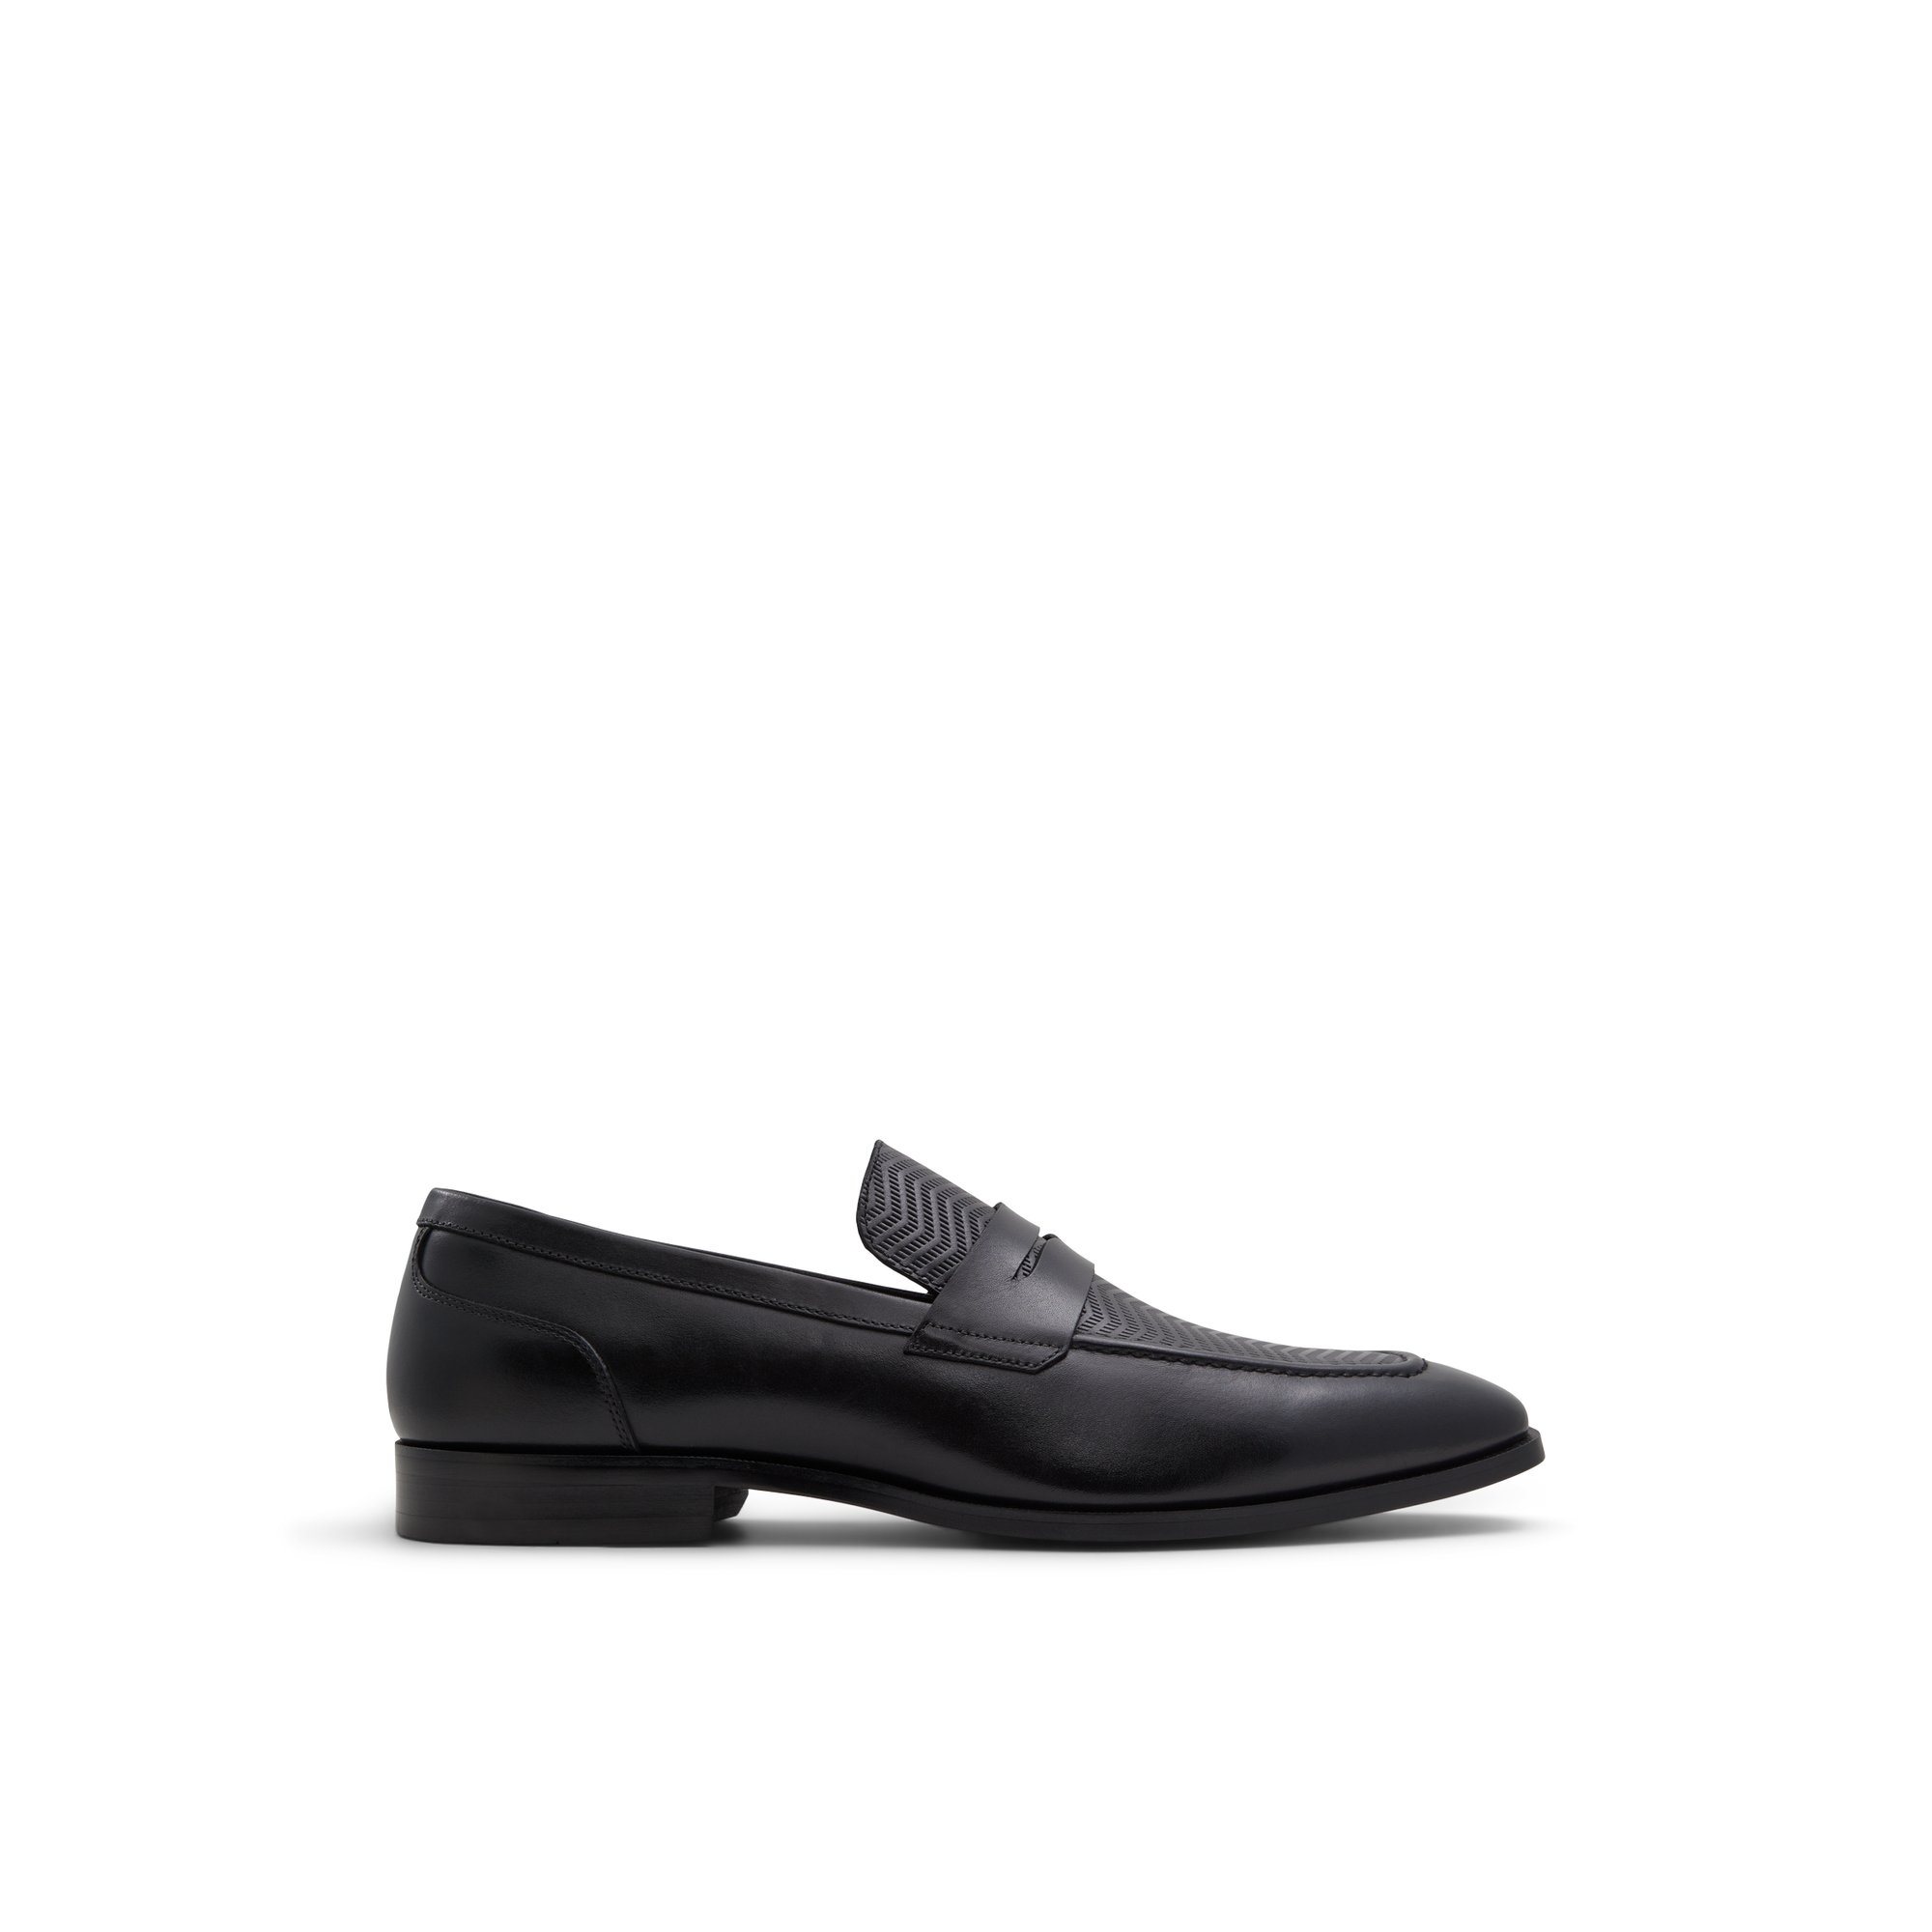 ALDO Aalto - Men's Dress Shoe - Black